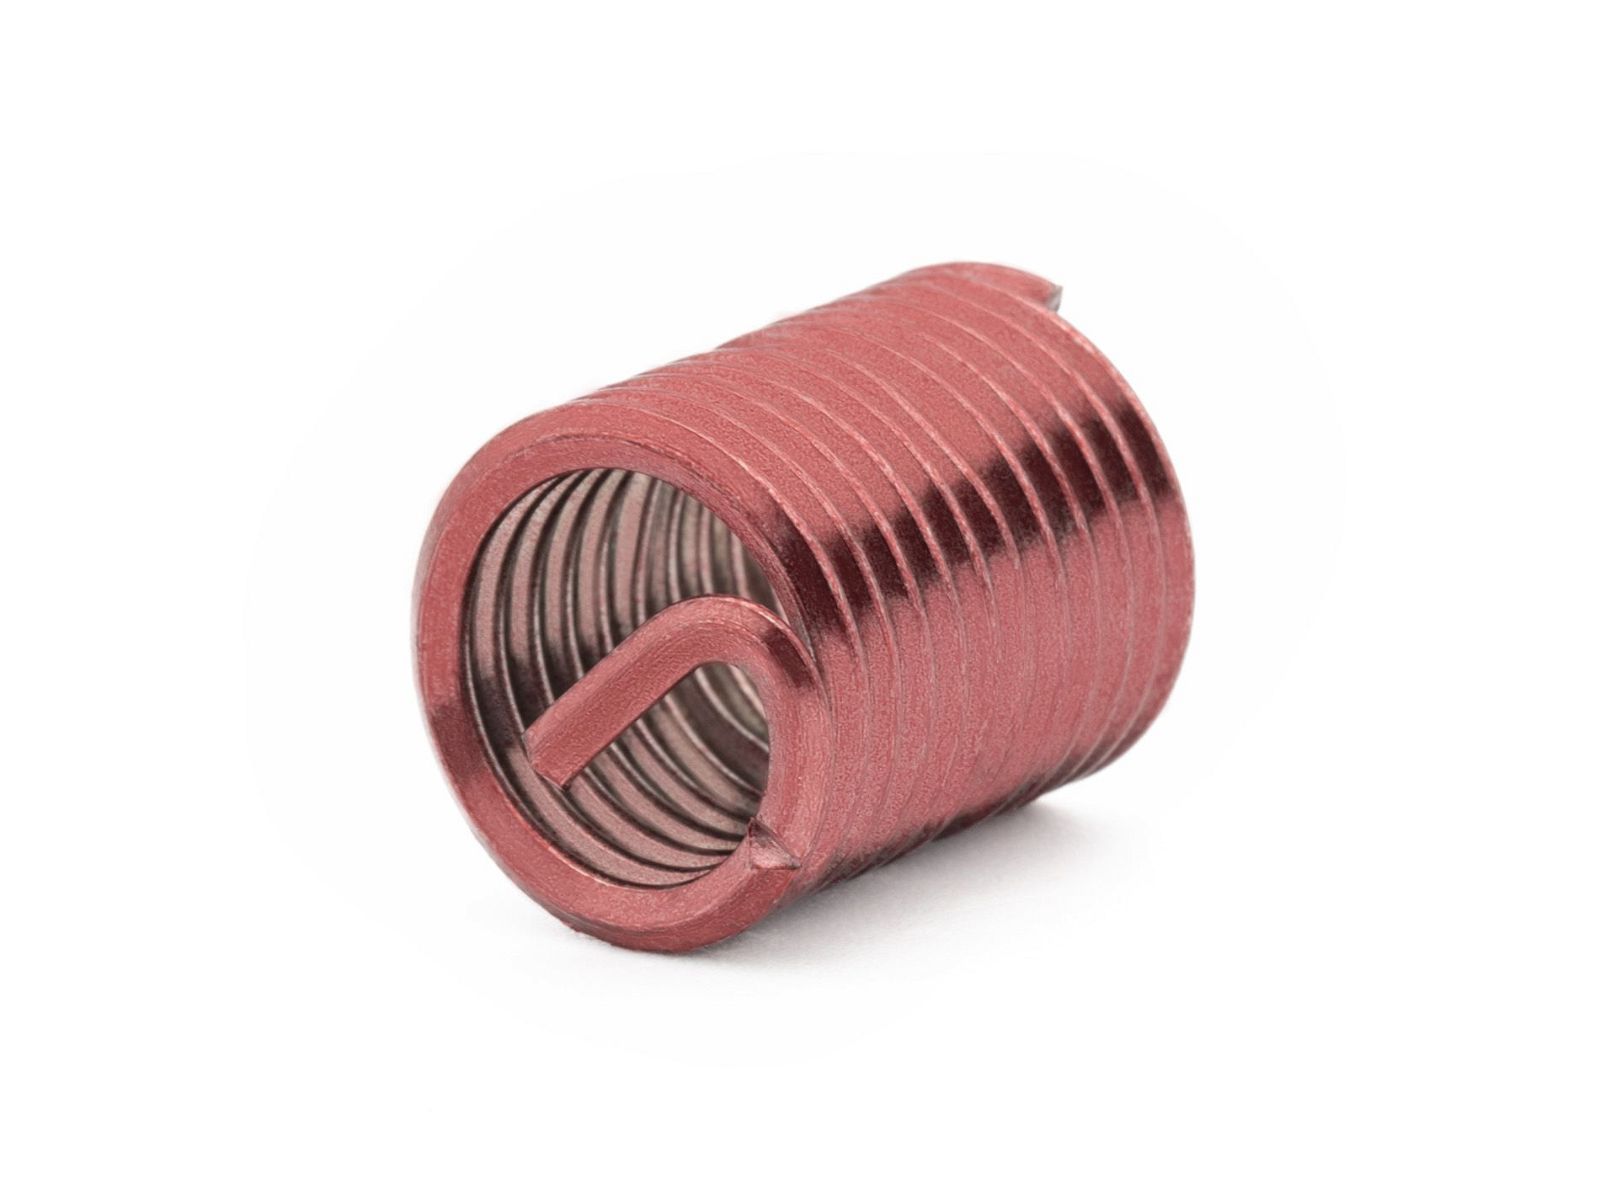 BaerCoil Wire Thread Inserts BSF 3/8 x 20 - 2.0 D (19.05 mm) - screw grip (screw locking) - 100 pcs.